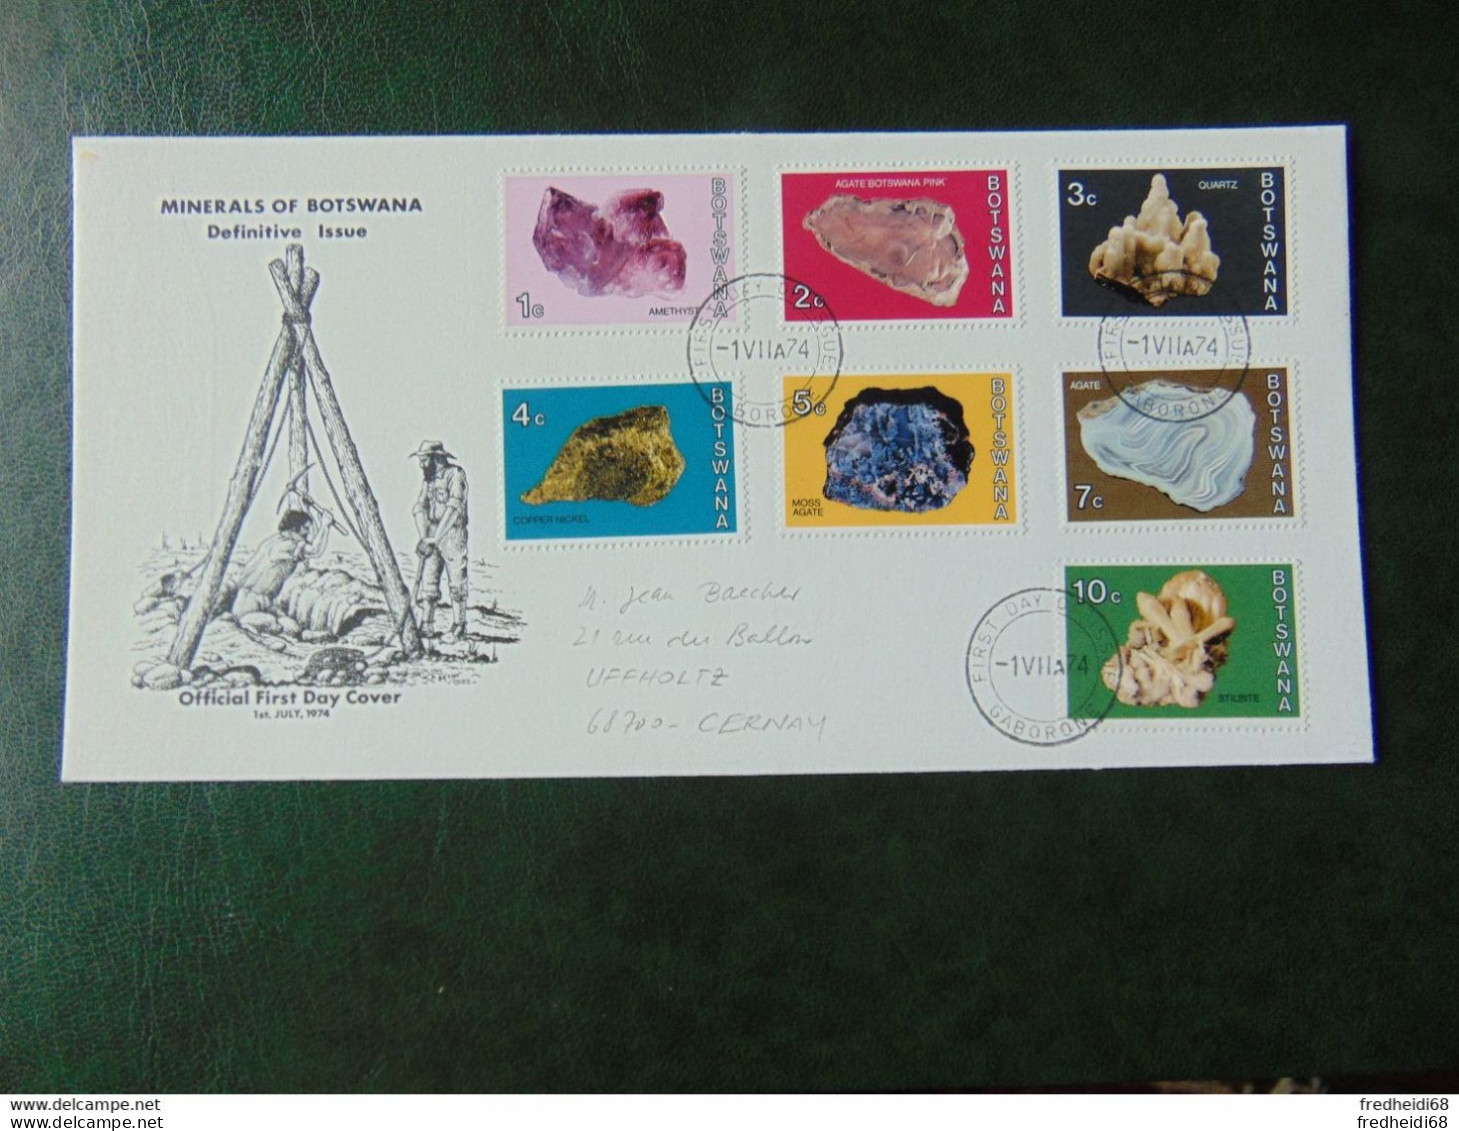 Très bel ensemble d'une dizaine d'enveloppes ayant réellement circulé au type mine et minéraux (10 photos)